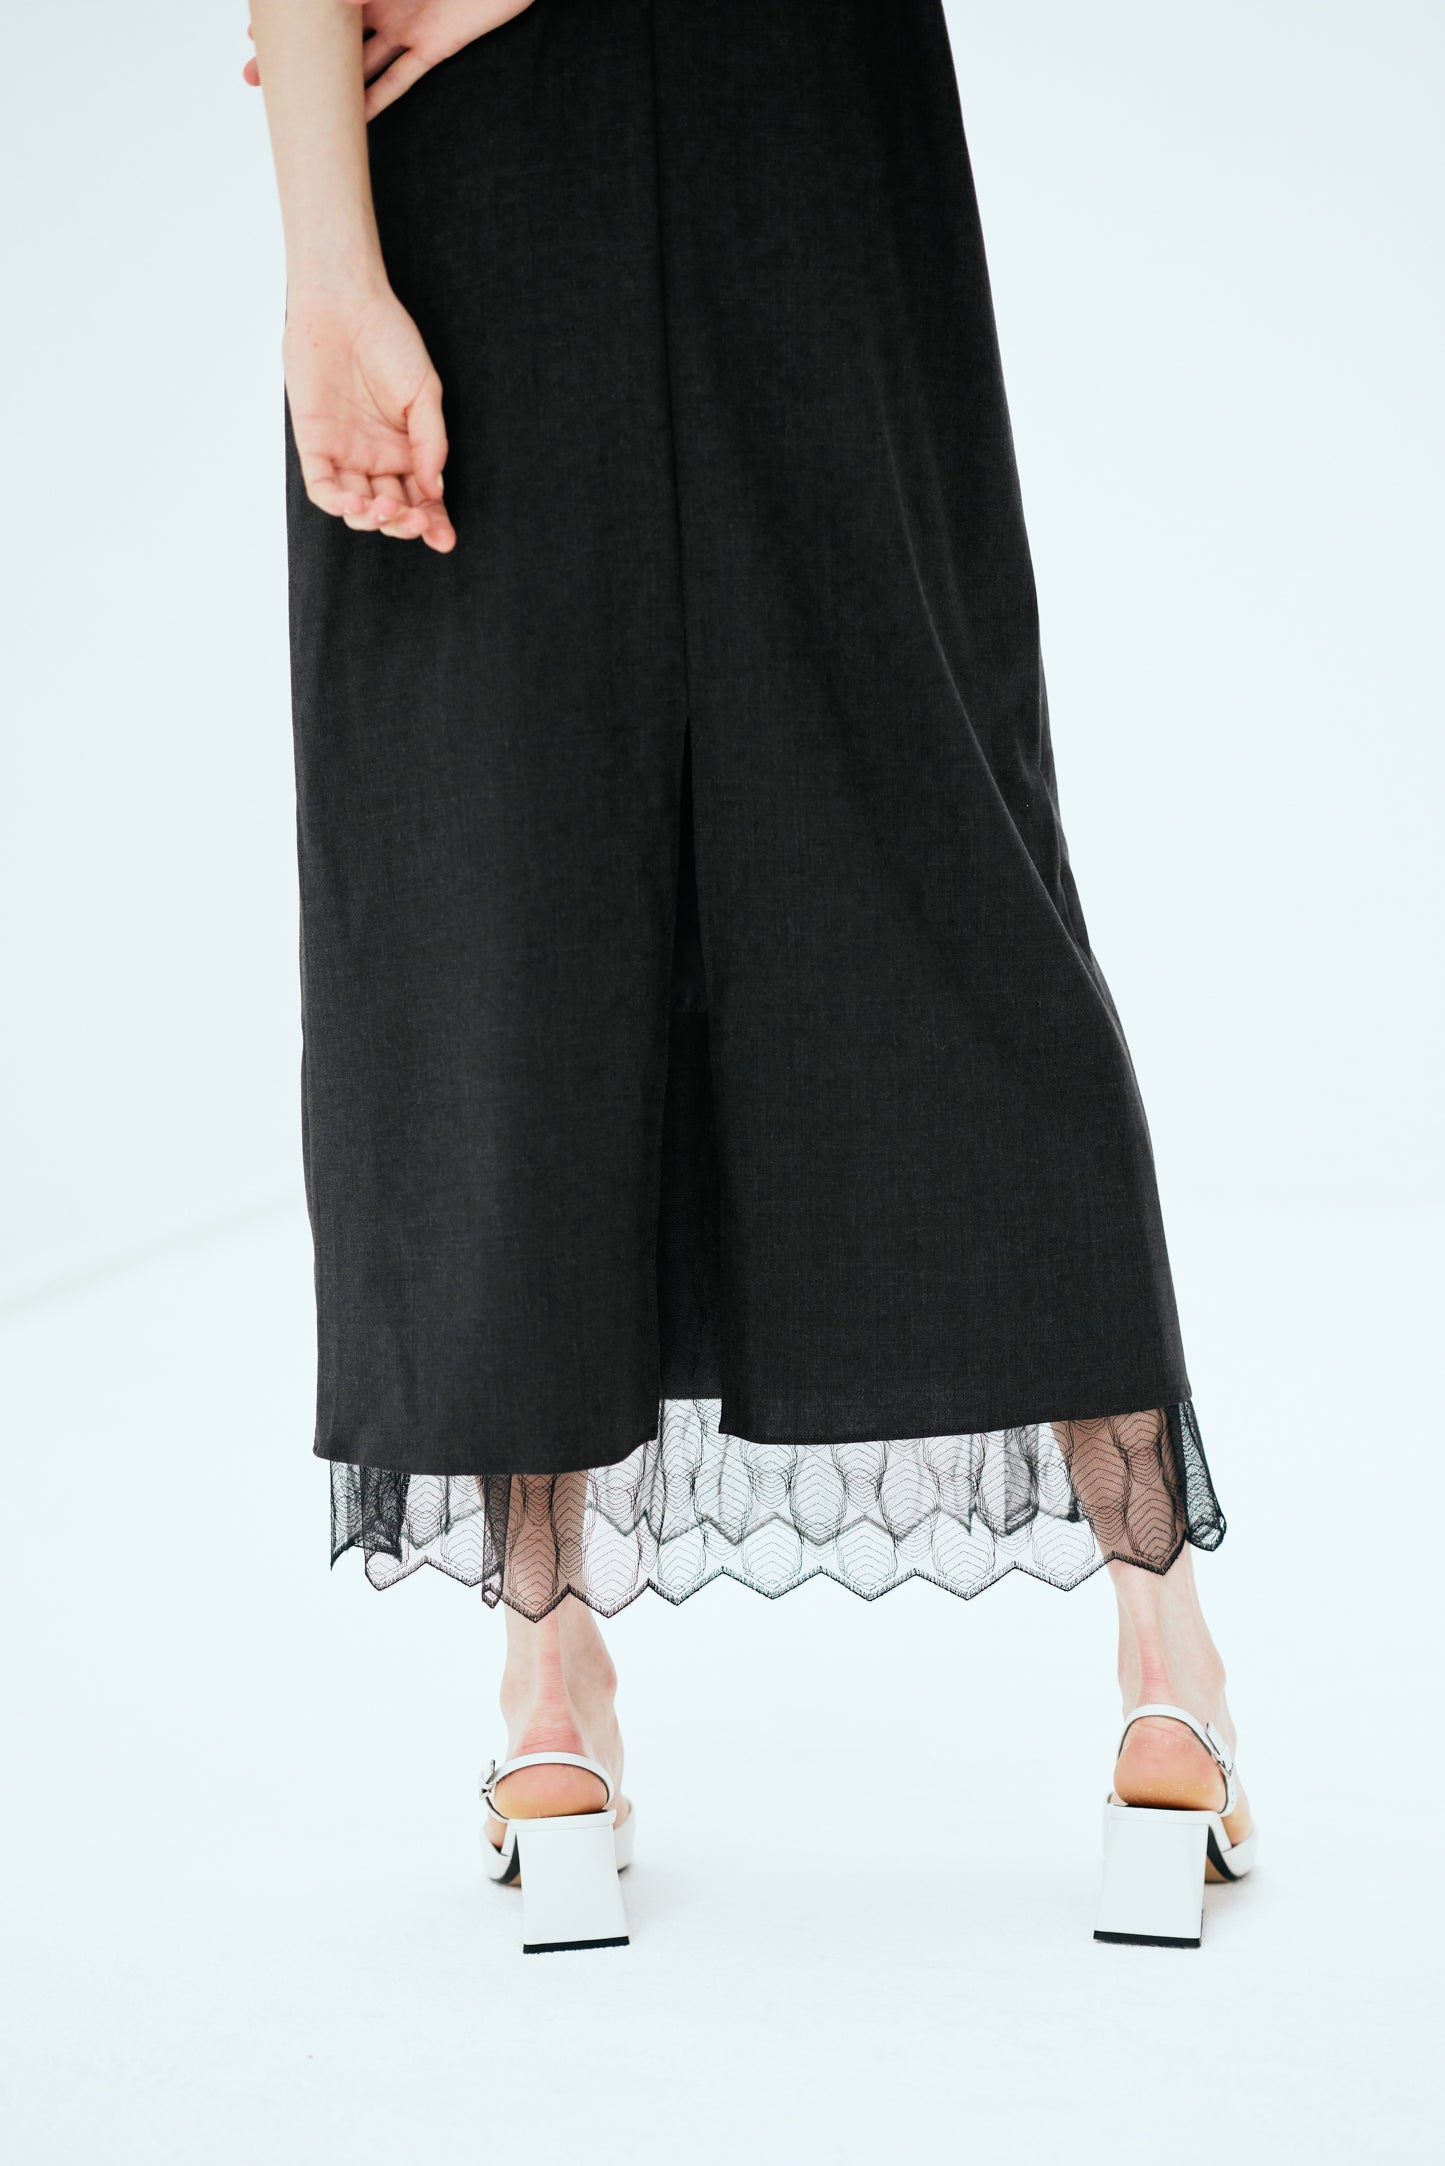 #017-1　Slip Skirt